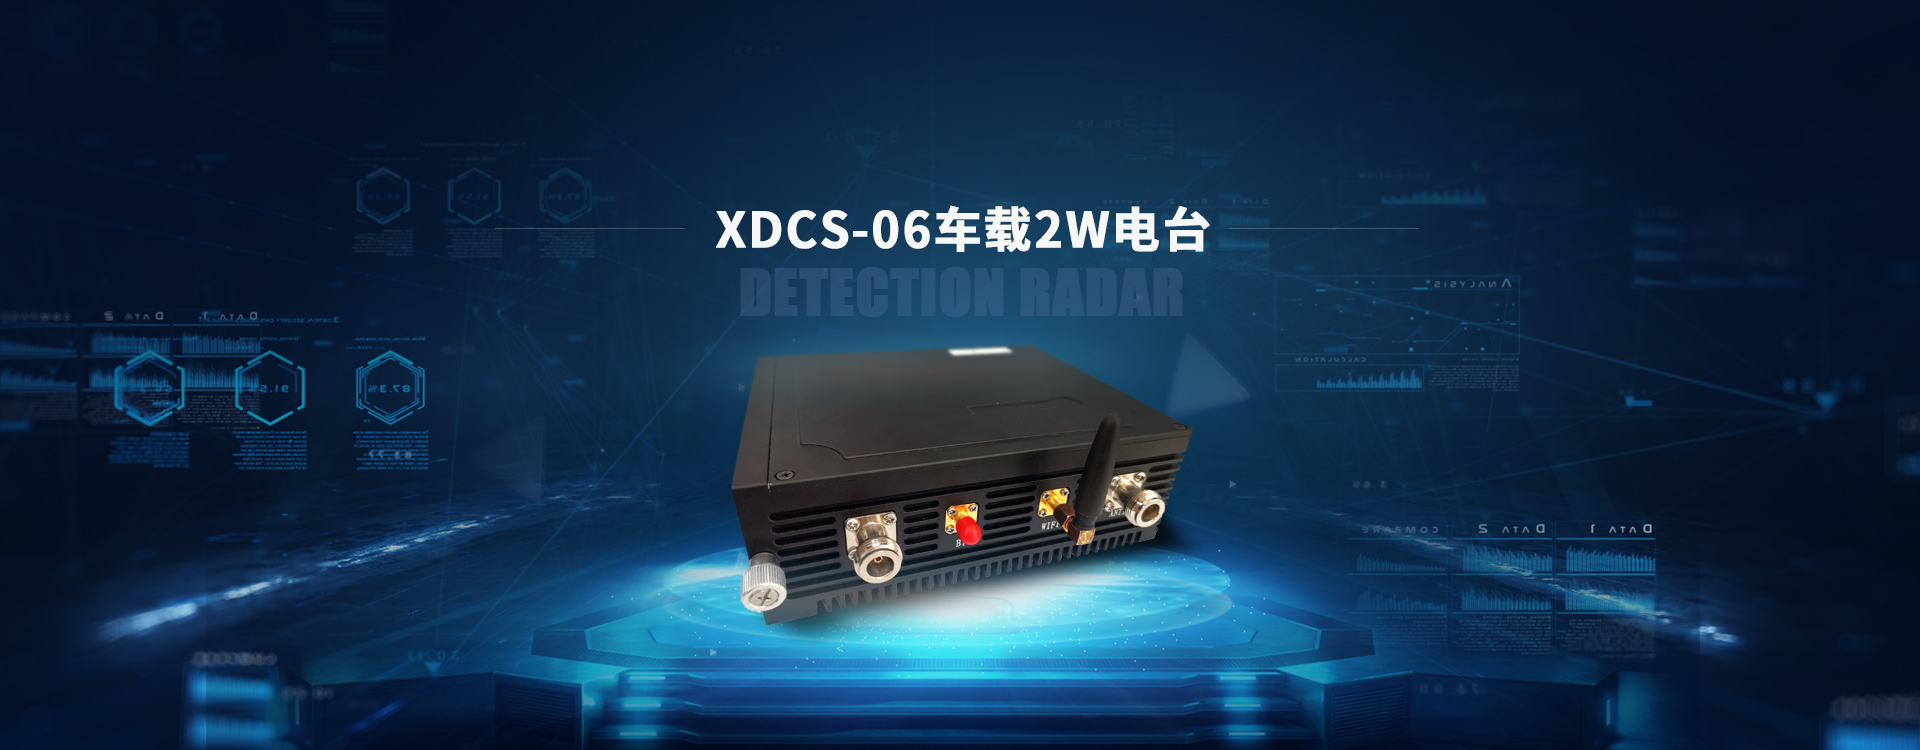 XDCS-06车载2W电台